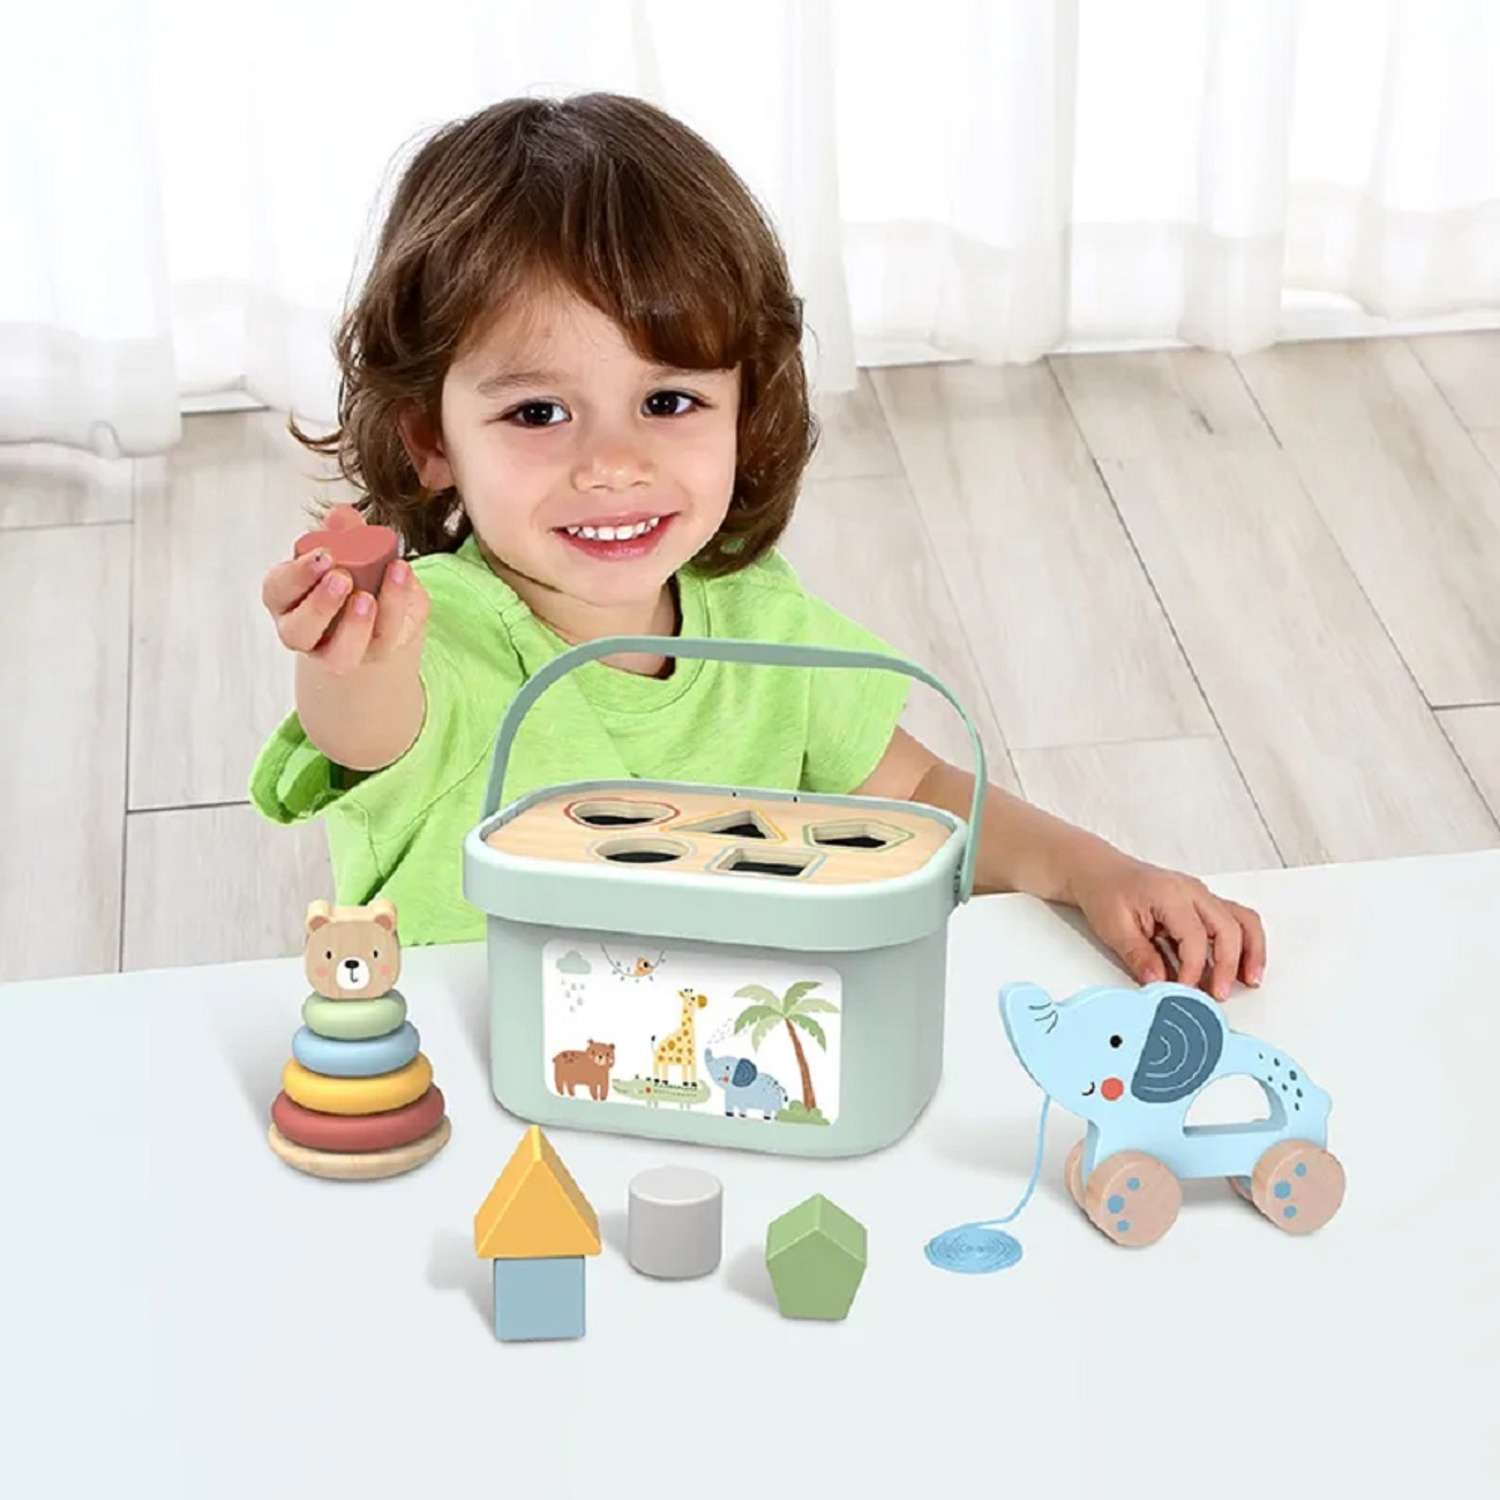 Игровой набор Tooky Toy TJ011 для малыша пирамидка каталка сортер - фото 2